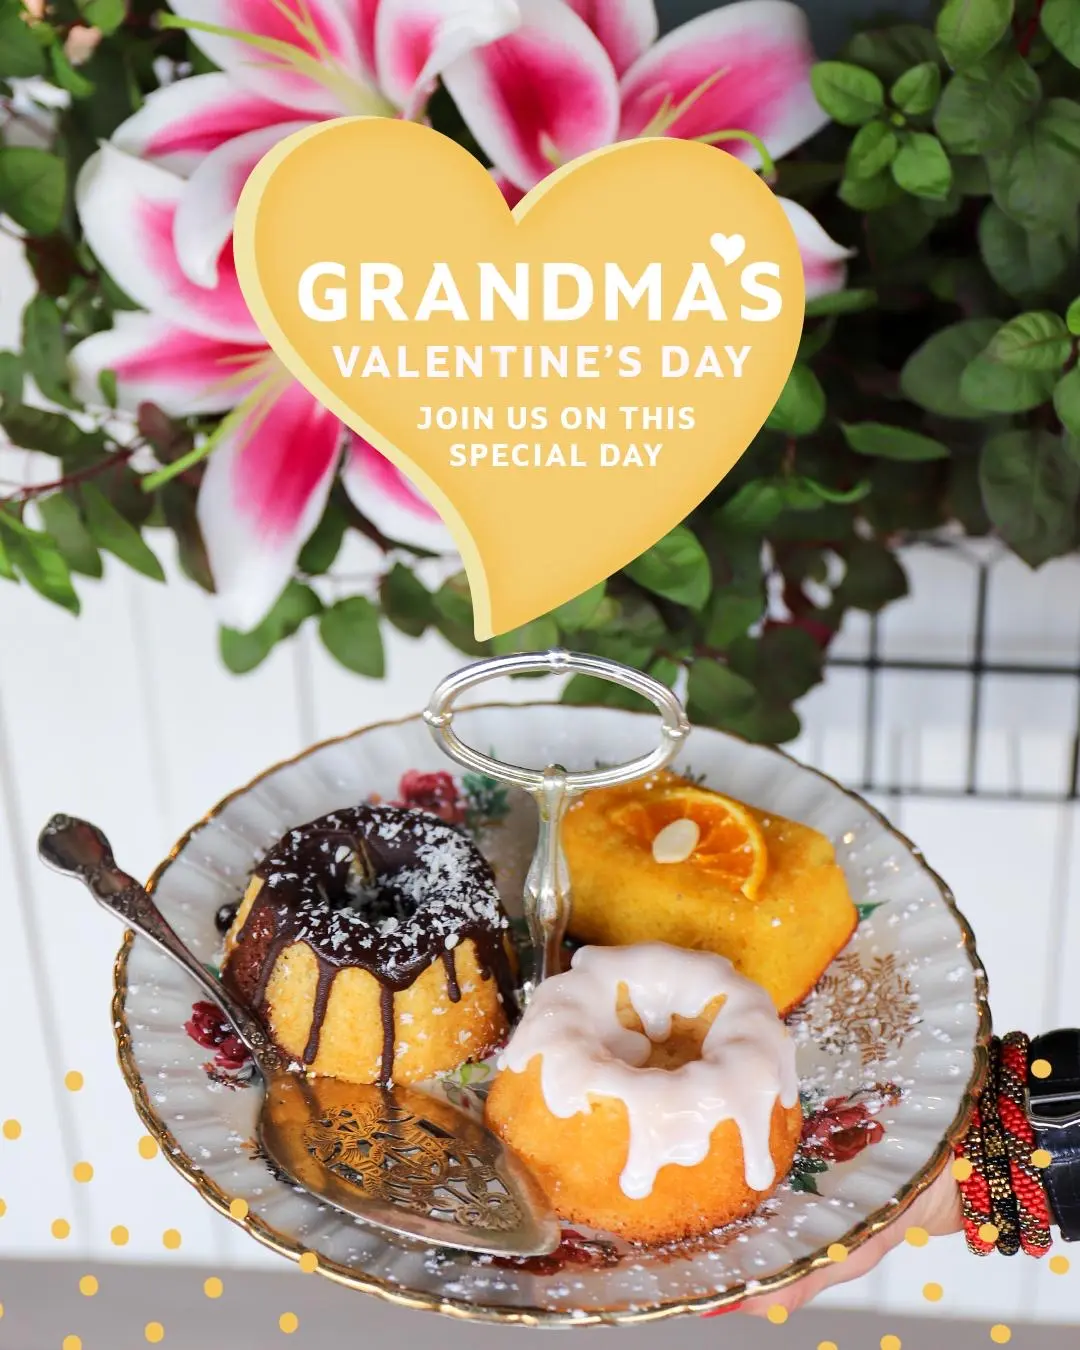 Did You Hear Grandma’s Has The Secret Recipe For Love? 